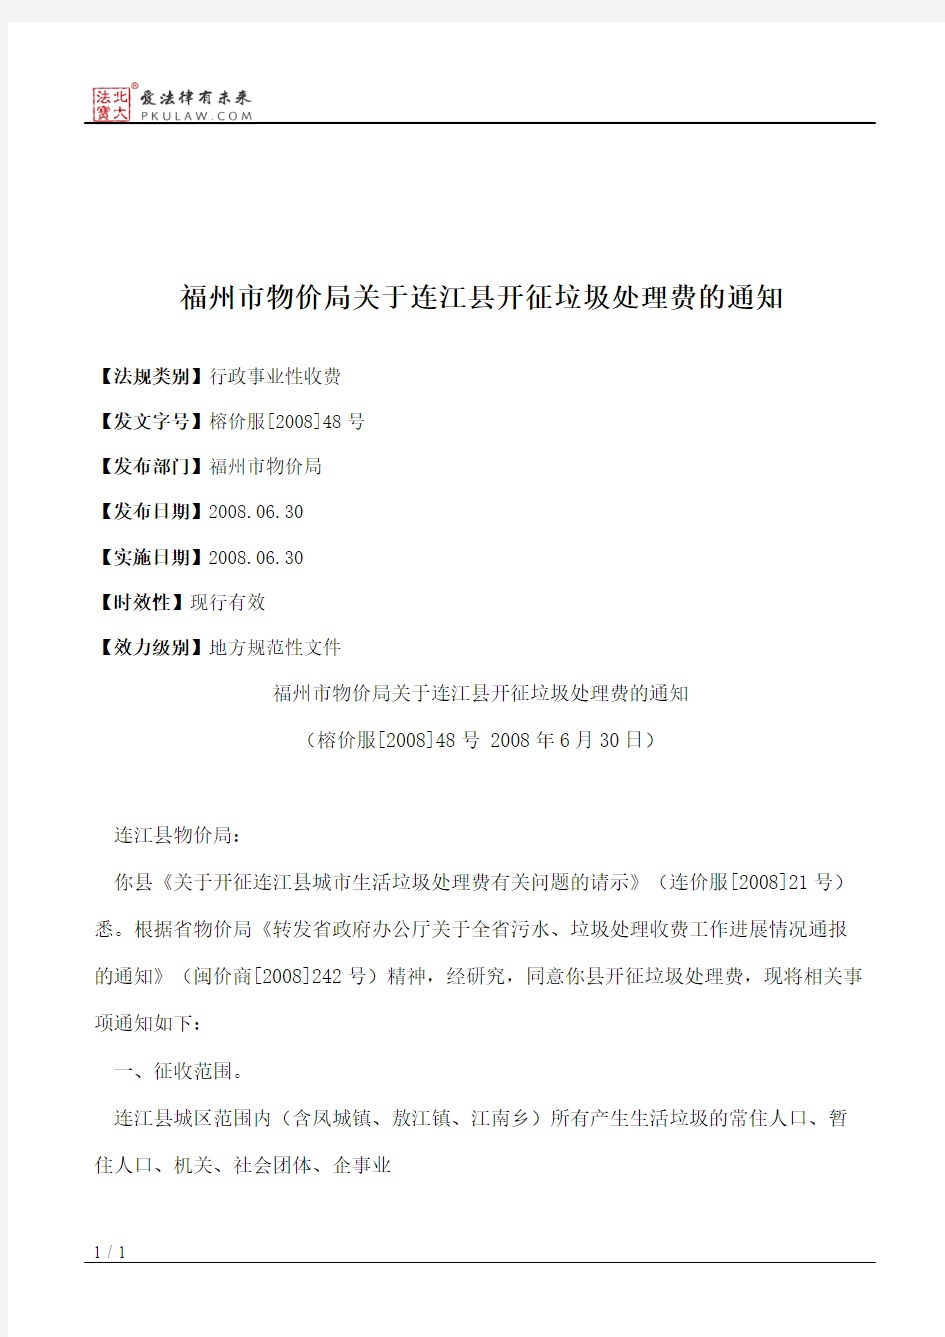 福州市物价局关于连江县开征垃圾处理费的通知